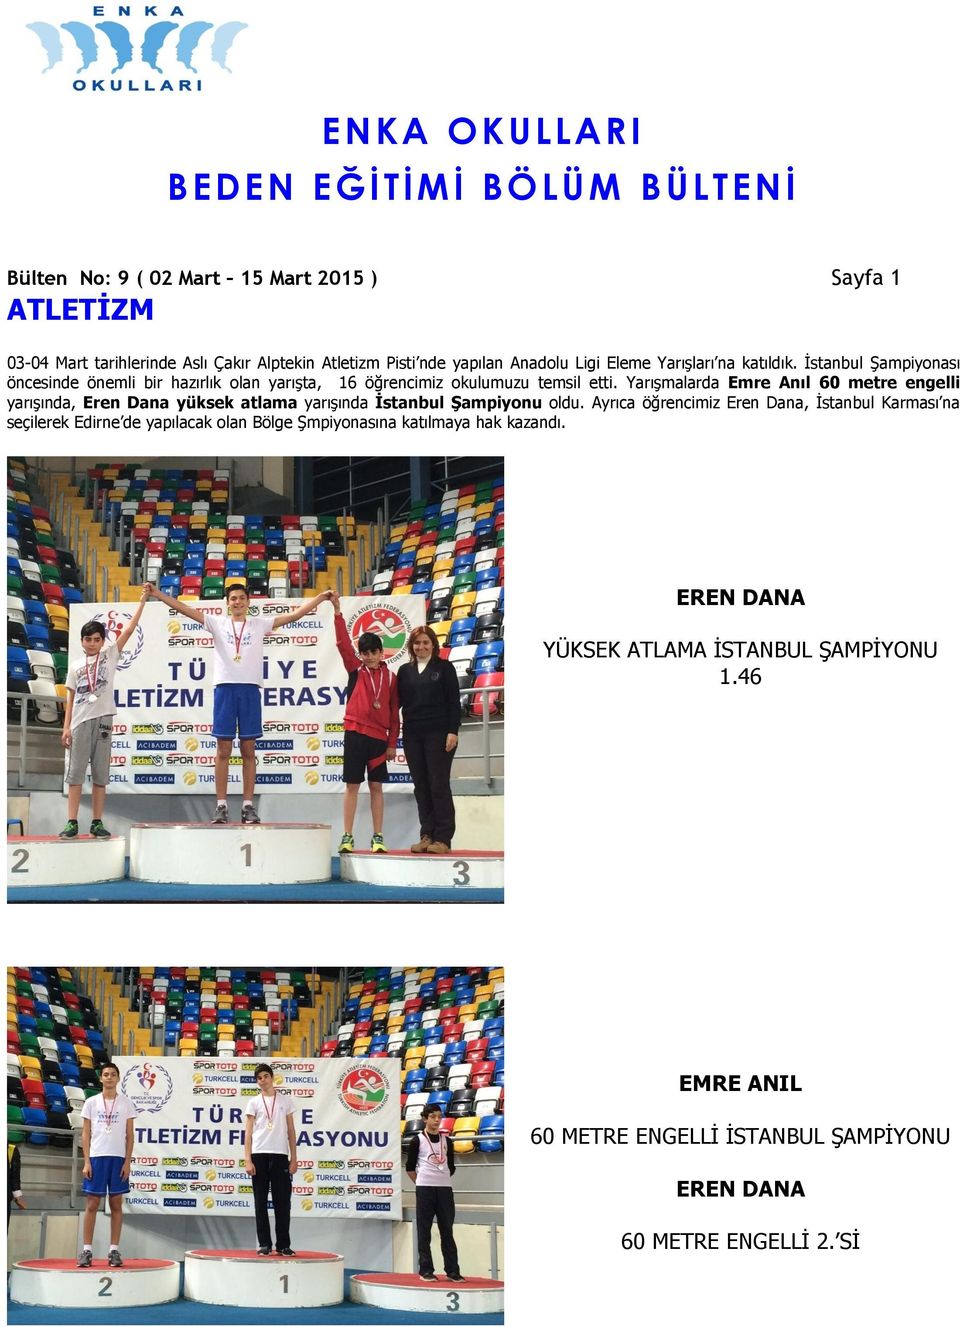 Yarışmalarda Emre Anıl 60 metre engelli yarışında, Eren Dana yüksek atlama yarışında İstanbul Şampiyonu oldu.